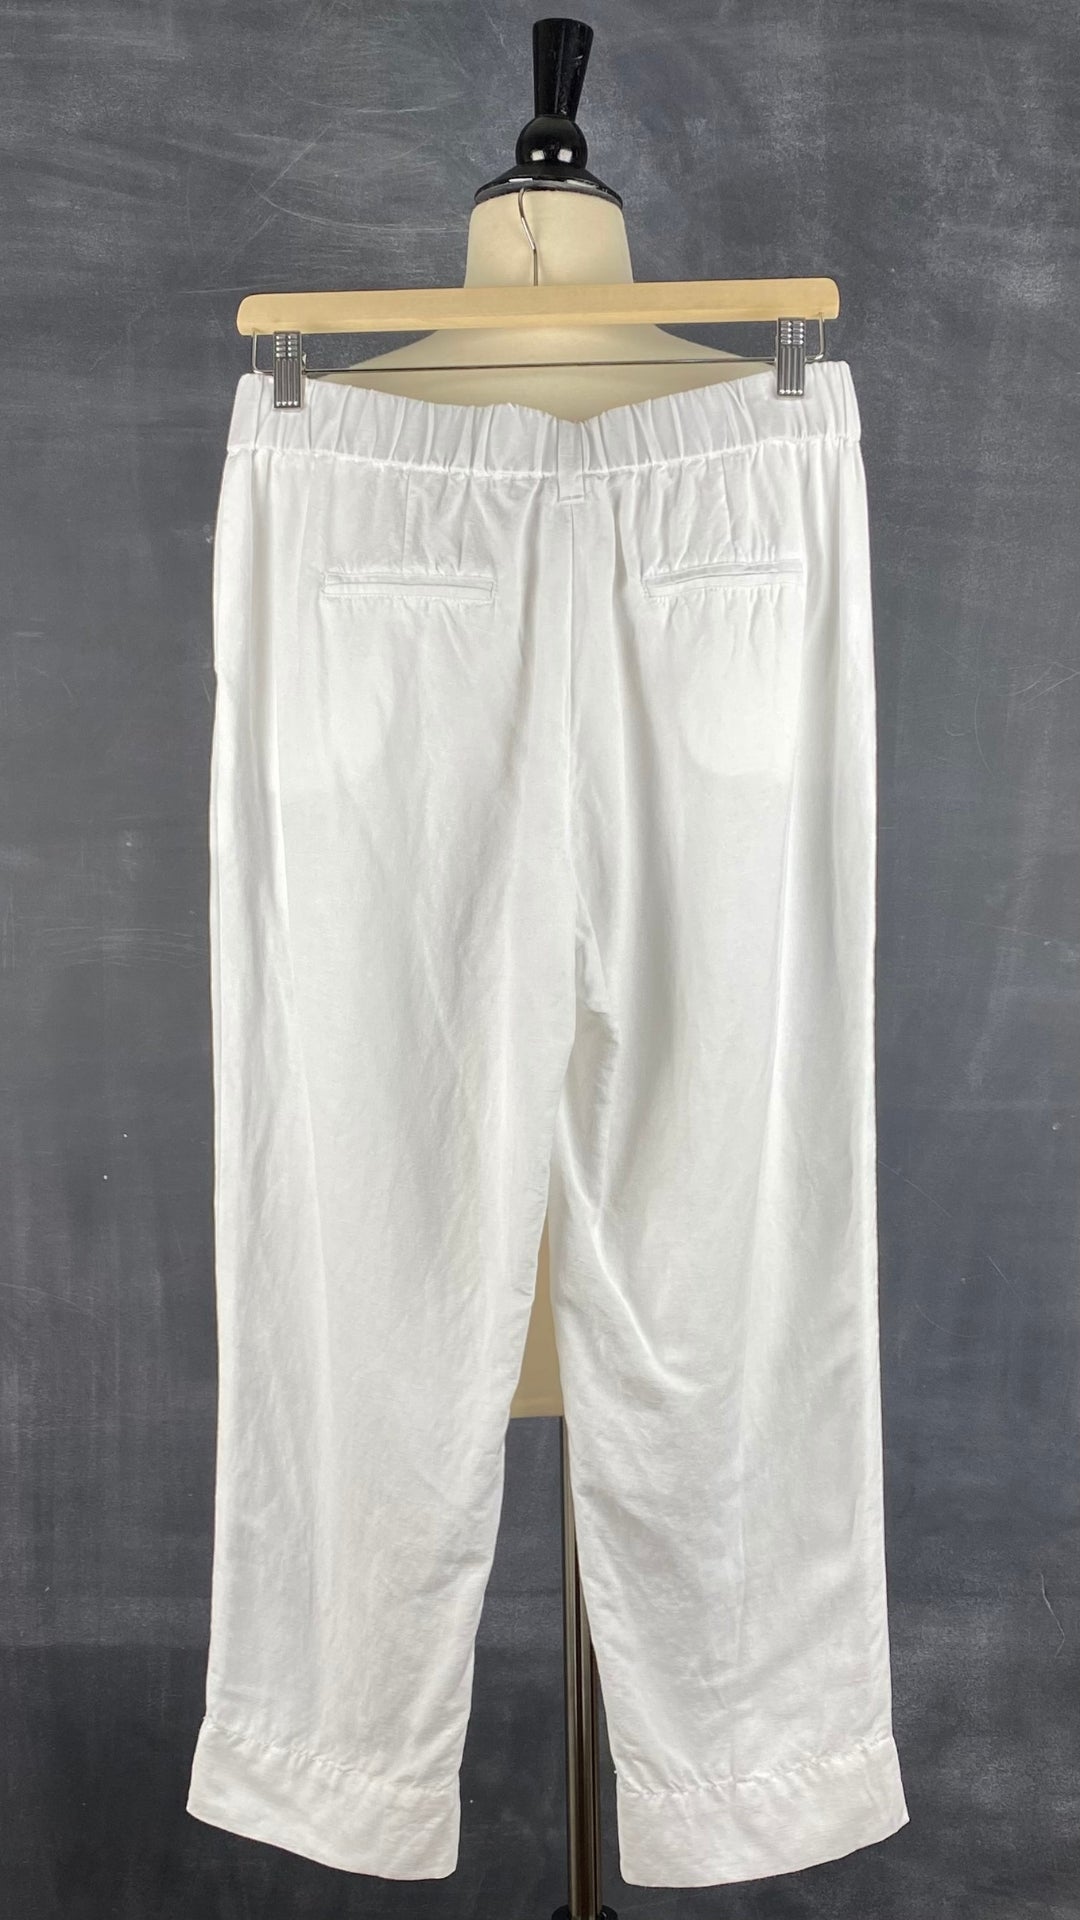 Pantalon blanc longueur 3/4 en mélange de lin Melanie Lyne, taille 4. Vue de dos.